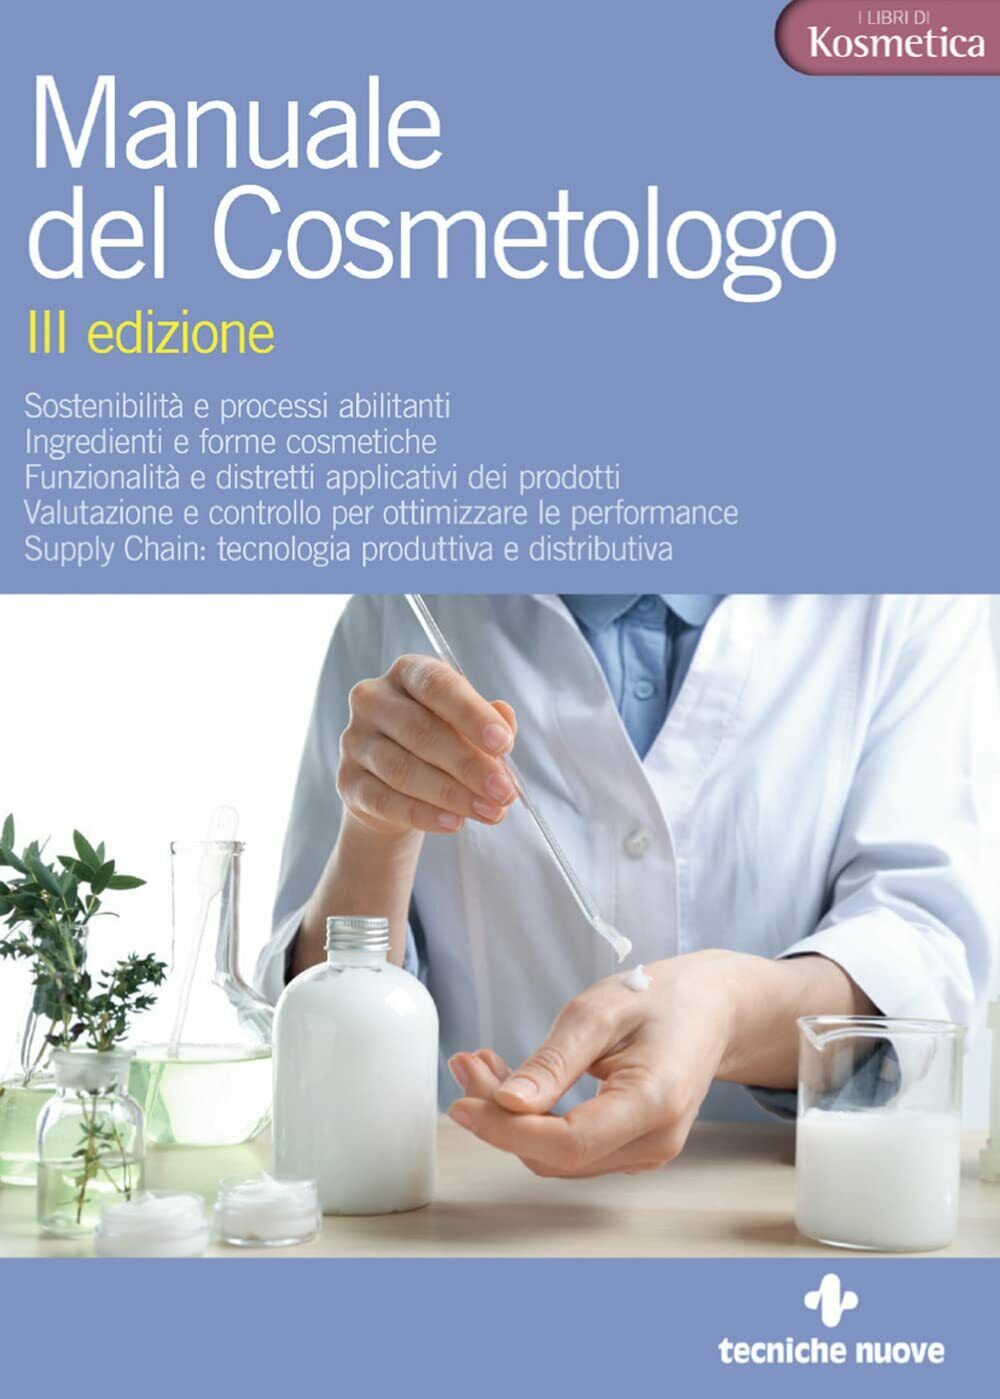 Manuale del cosmetologo - G. D'Agostinis, E. Mignini - Tecniche Nuove, 2022